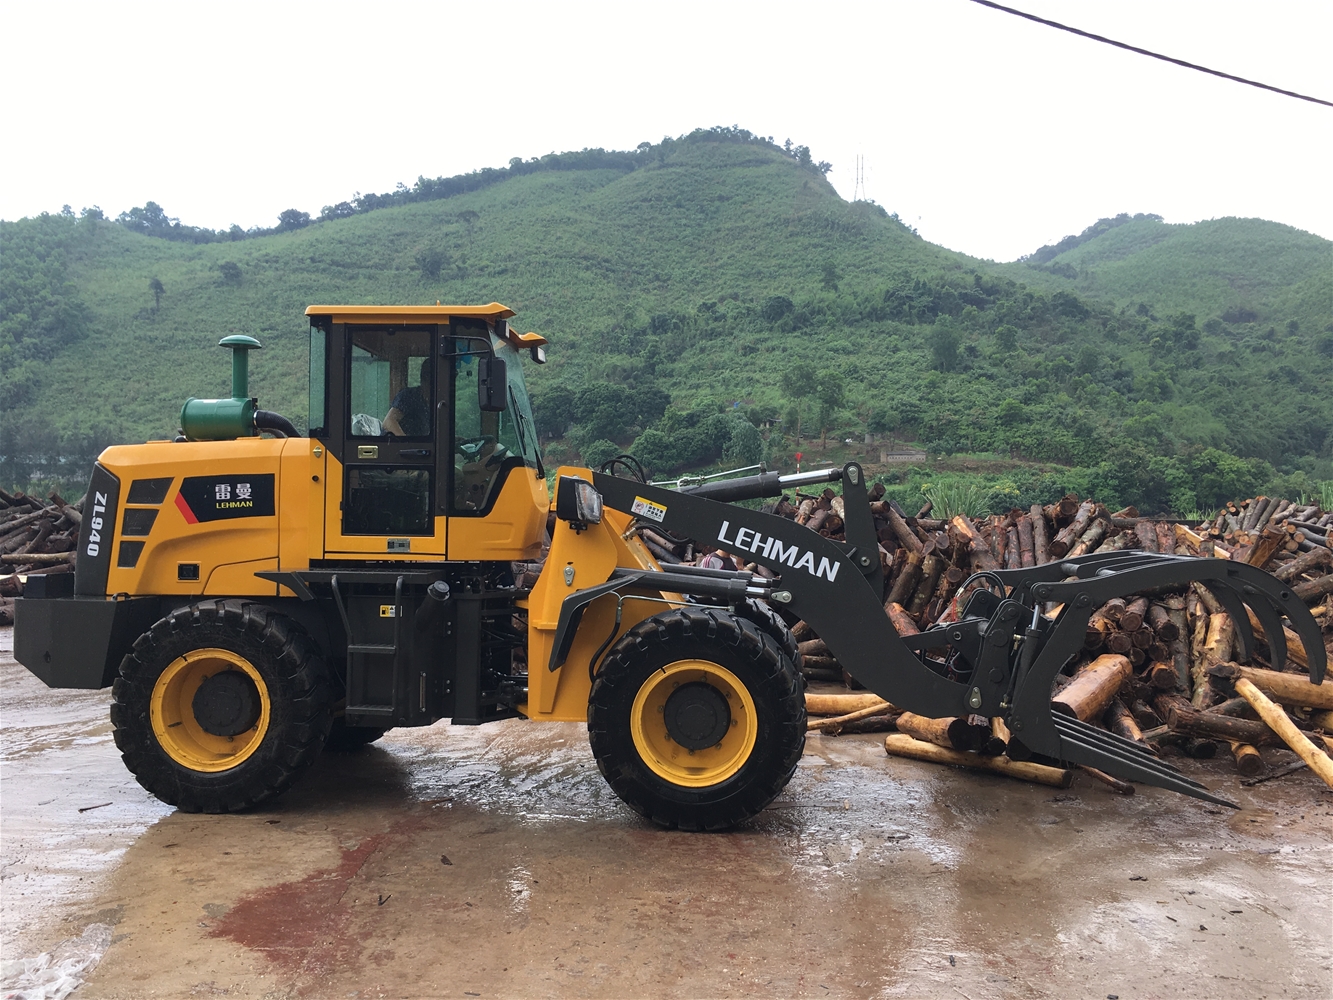 Máy xúc lật kẹp gỗ giá rẻ tại Hà Nội có thật sự hiệu quả?